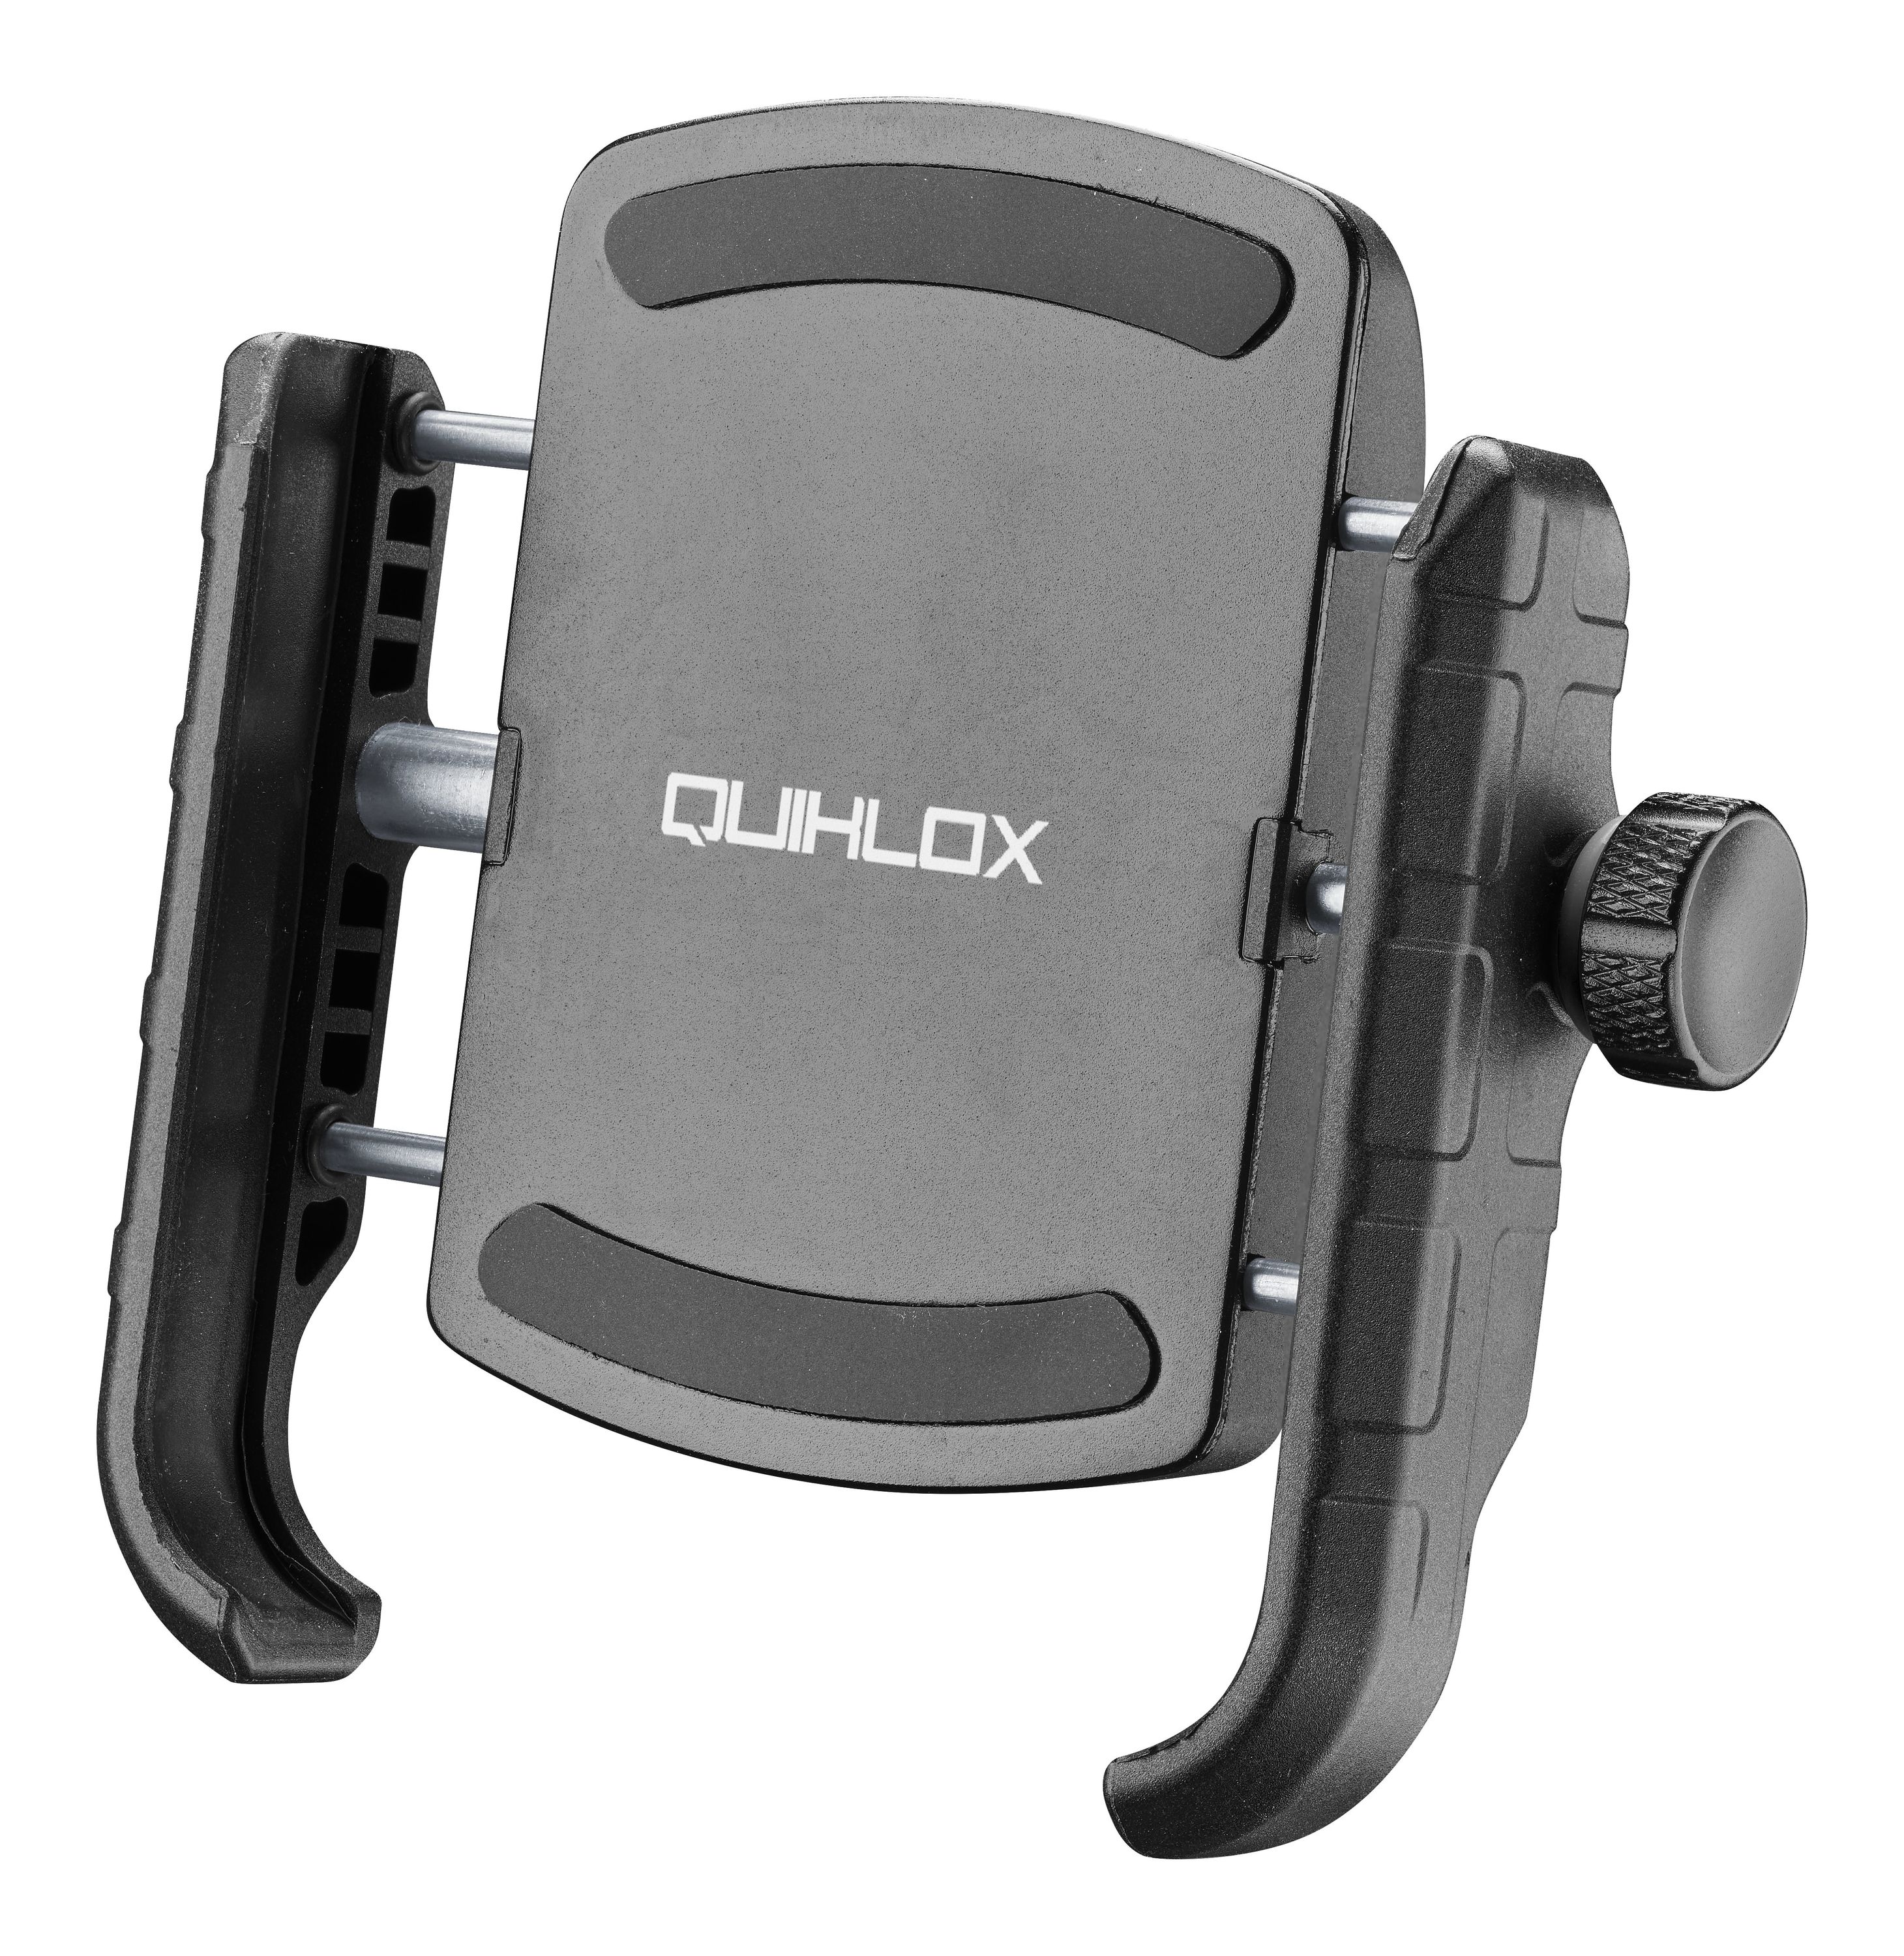 Quiklox - Universalhalterung Crab